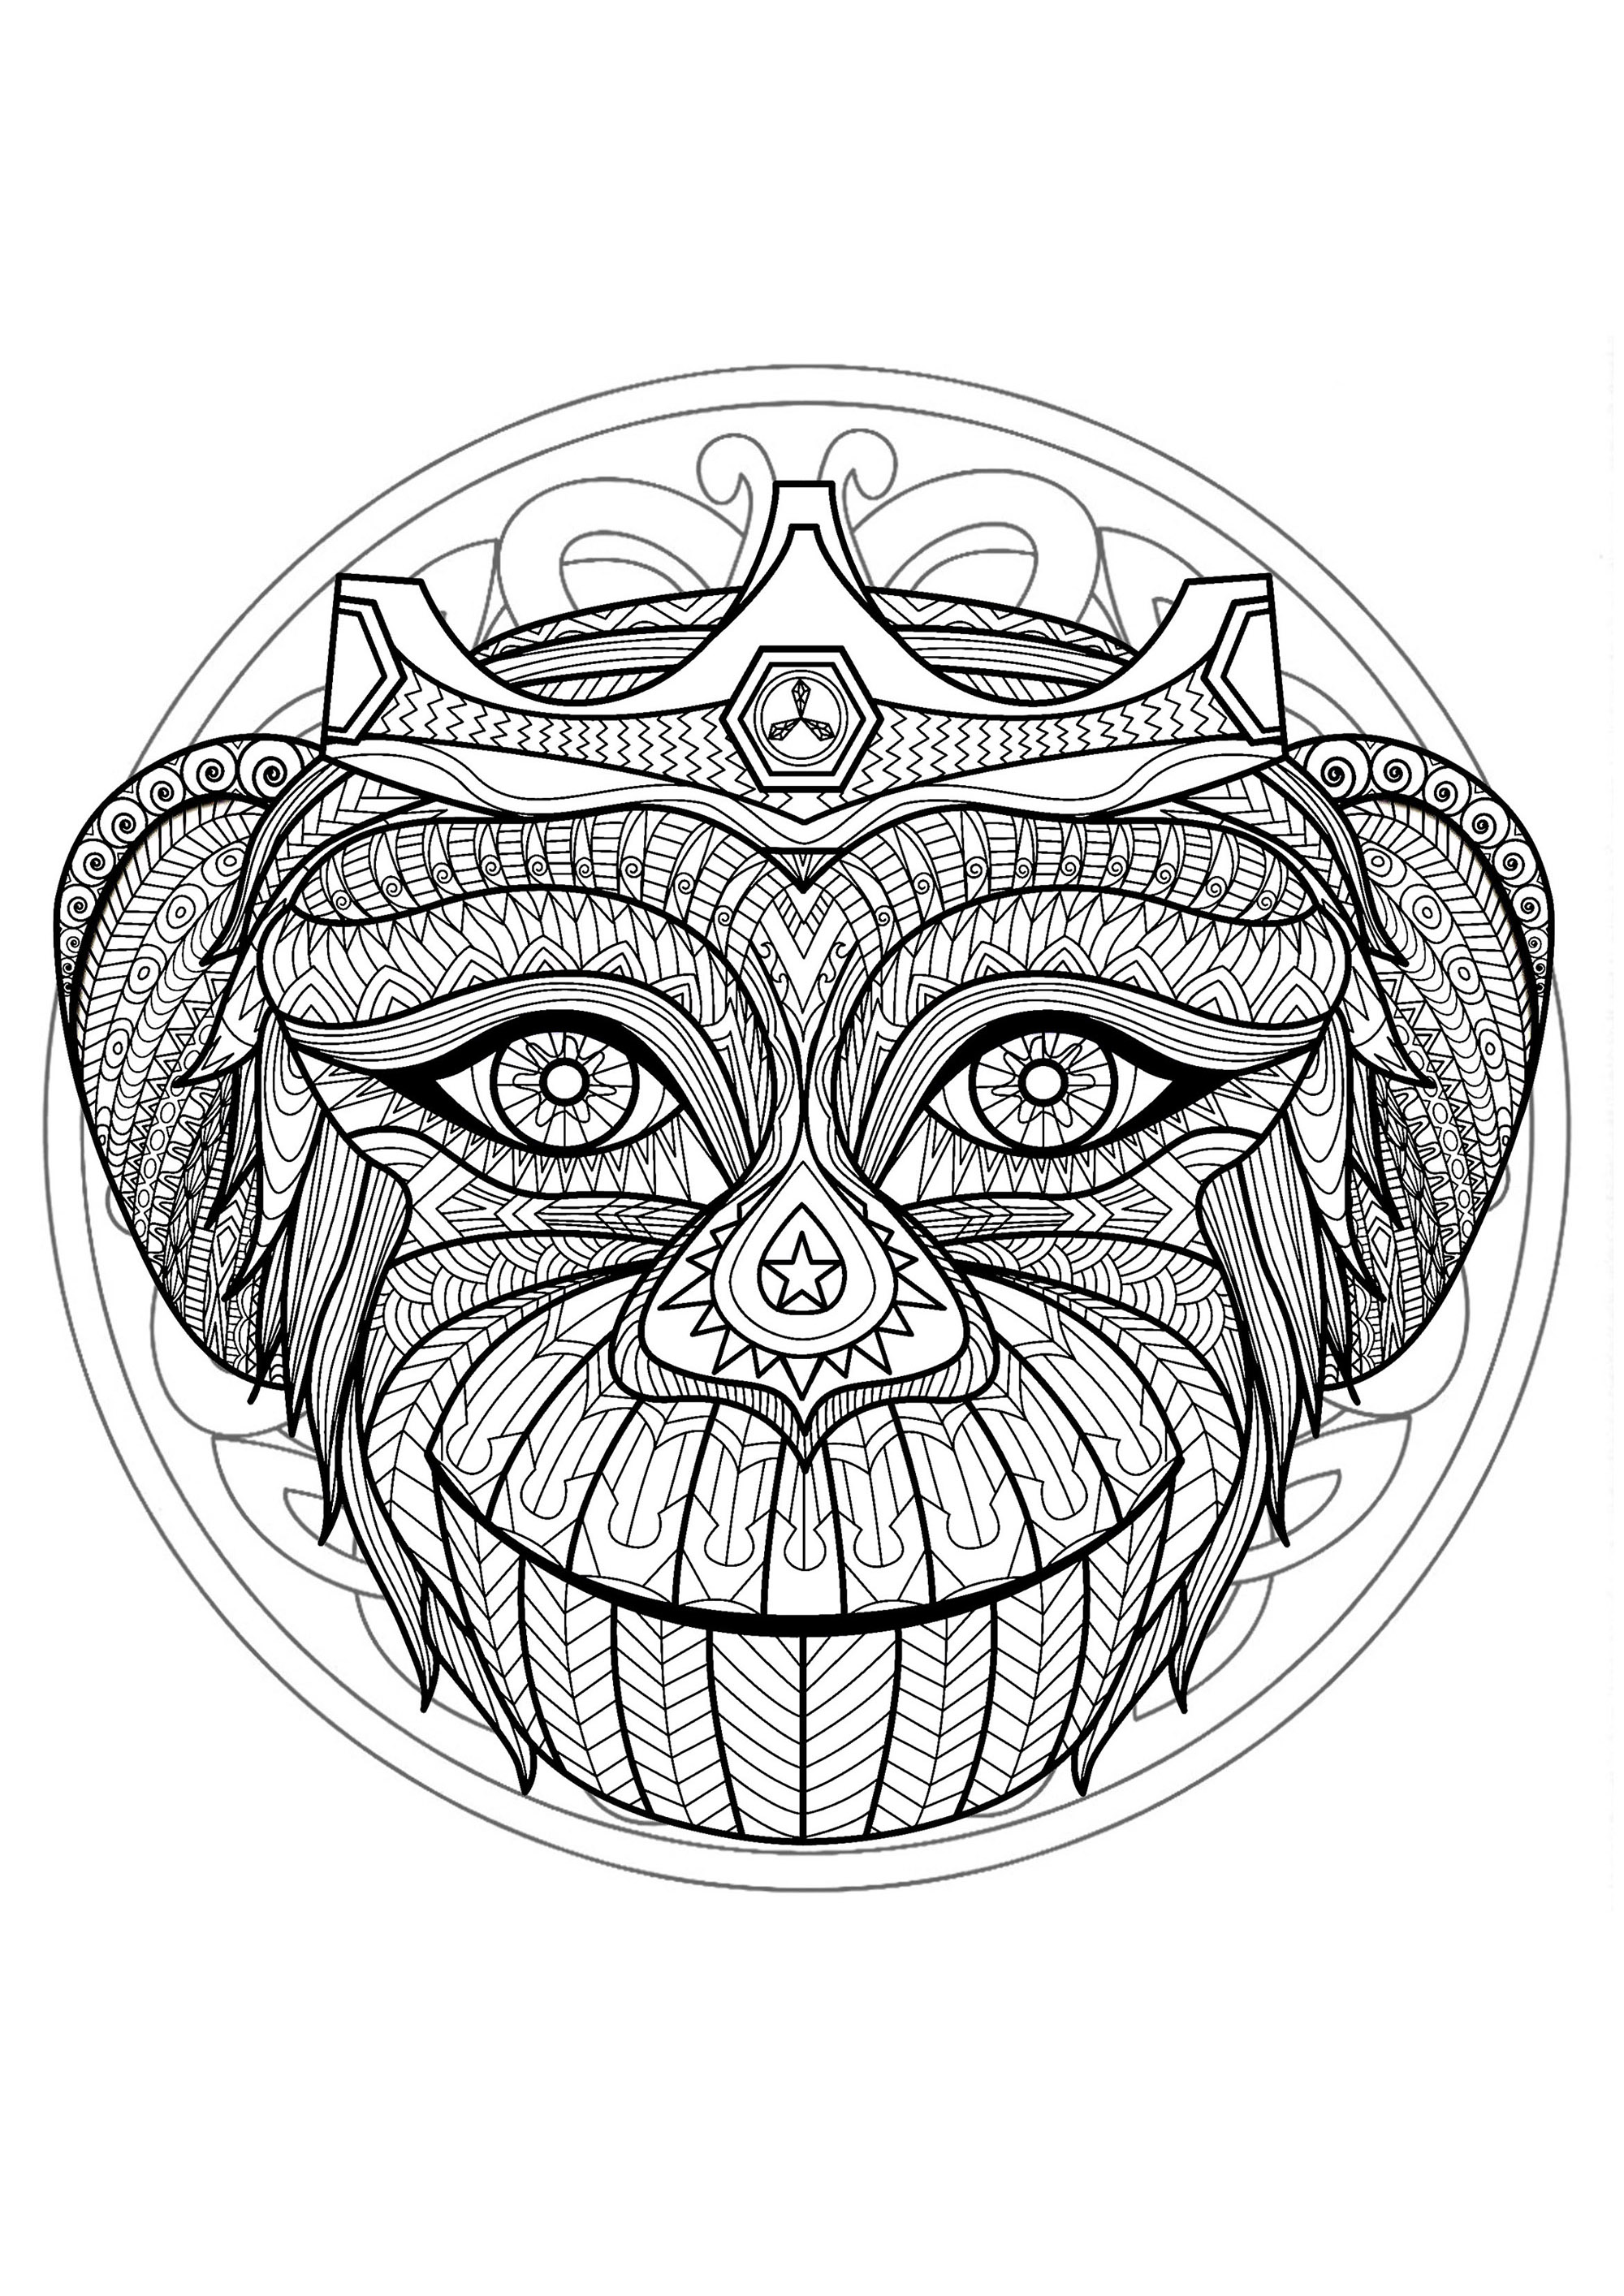 Mandala zum Ausmalen mit sehr schönem Affenkopf und schönen verschlungenen Mustern im Hintergrund